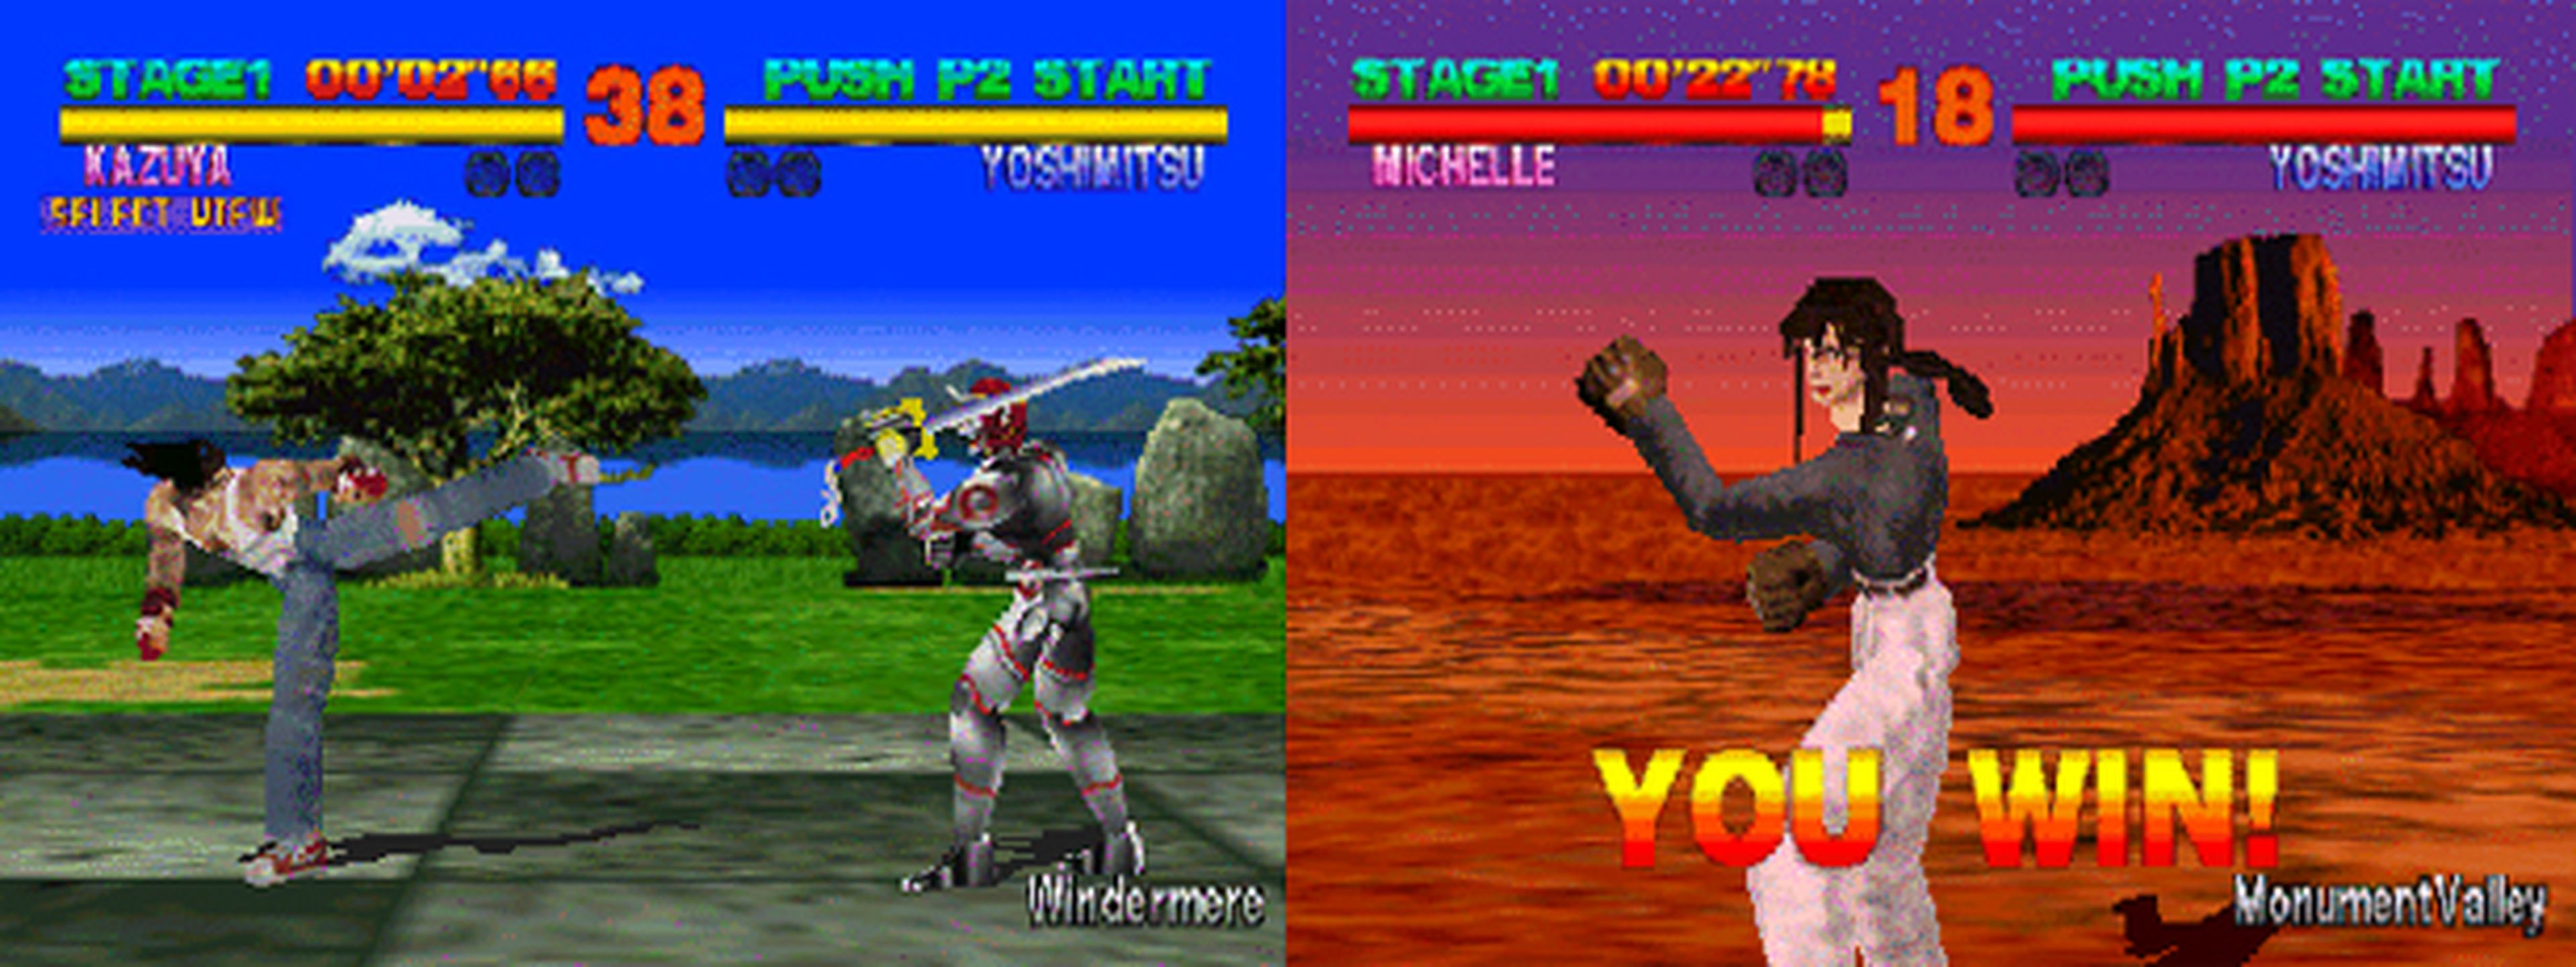 Hobby Consolas, hace 20 años: Análisis de Tekken